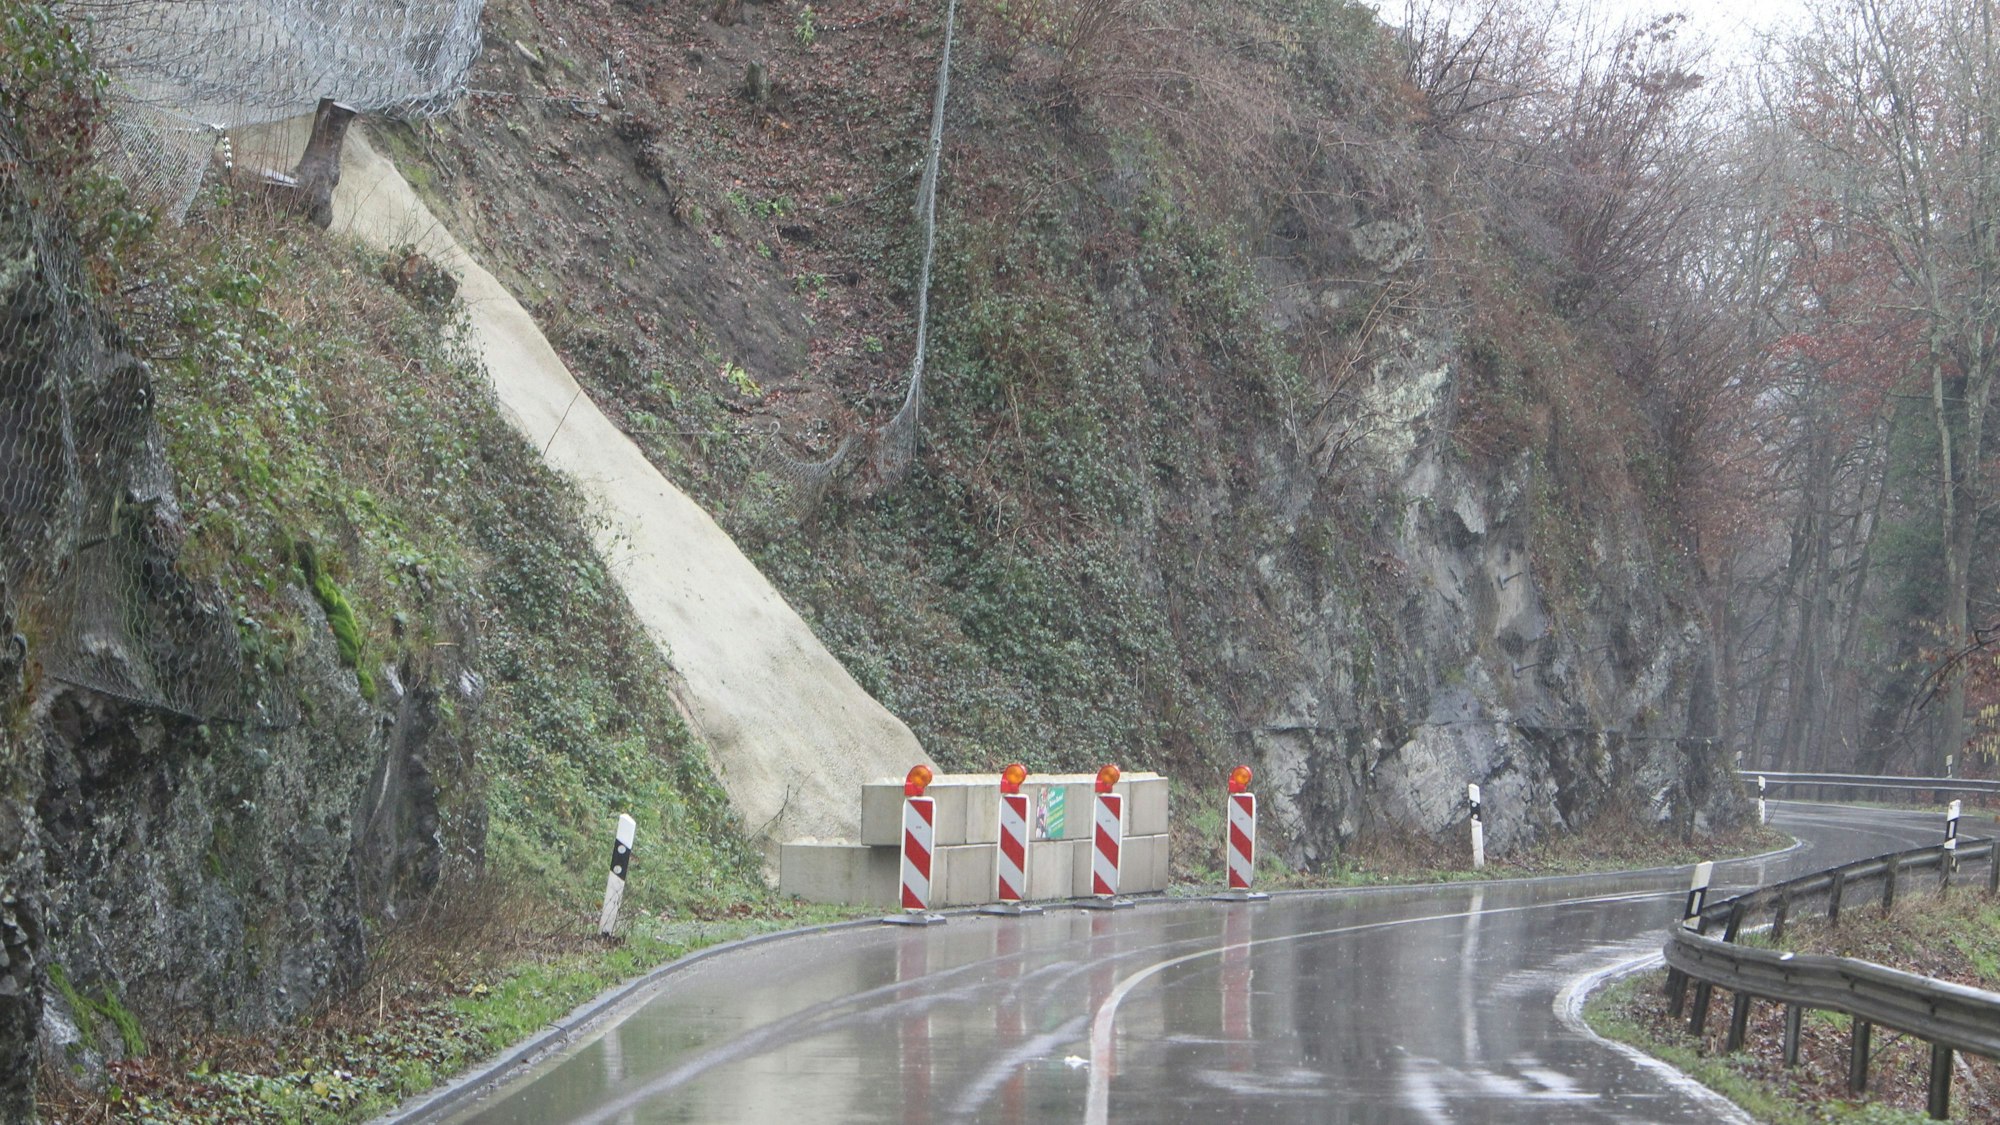 Die Landstraße 333 zwischen Hennef und Eitorf, hier im Januar 2022, nass von Regen. Am Straßenrand stehen einige Steinblöcke, die abgesperrt sind.